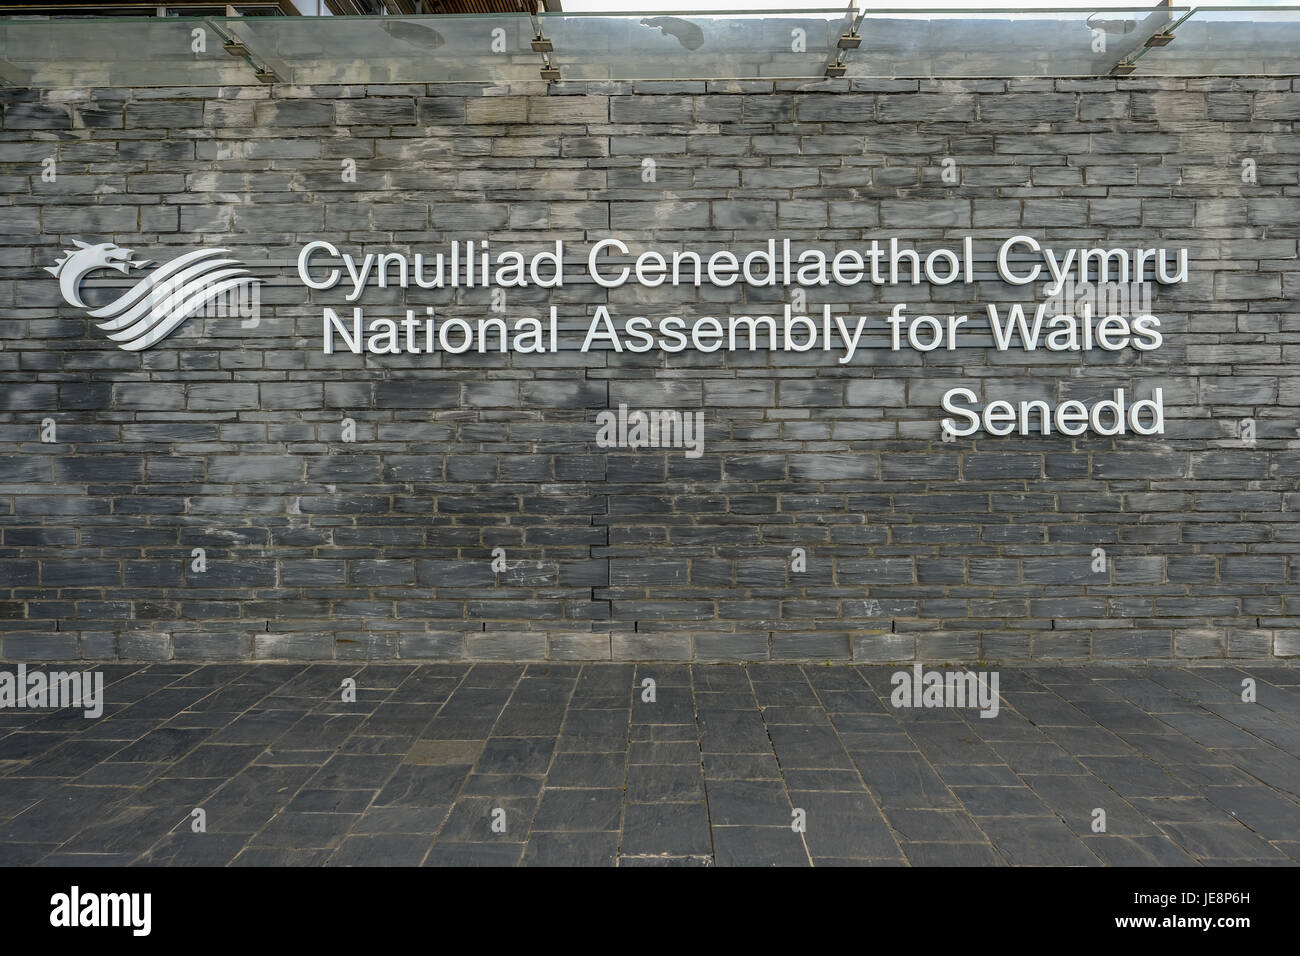 Bucht von Cardiff, Cardiff, Wales - 20. Mai 2017: Ansicht der Nationalversammlung Signage, Senedd in Walisisch und Englisch. Stockfoto